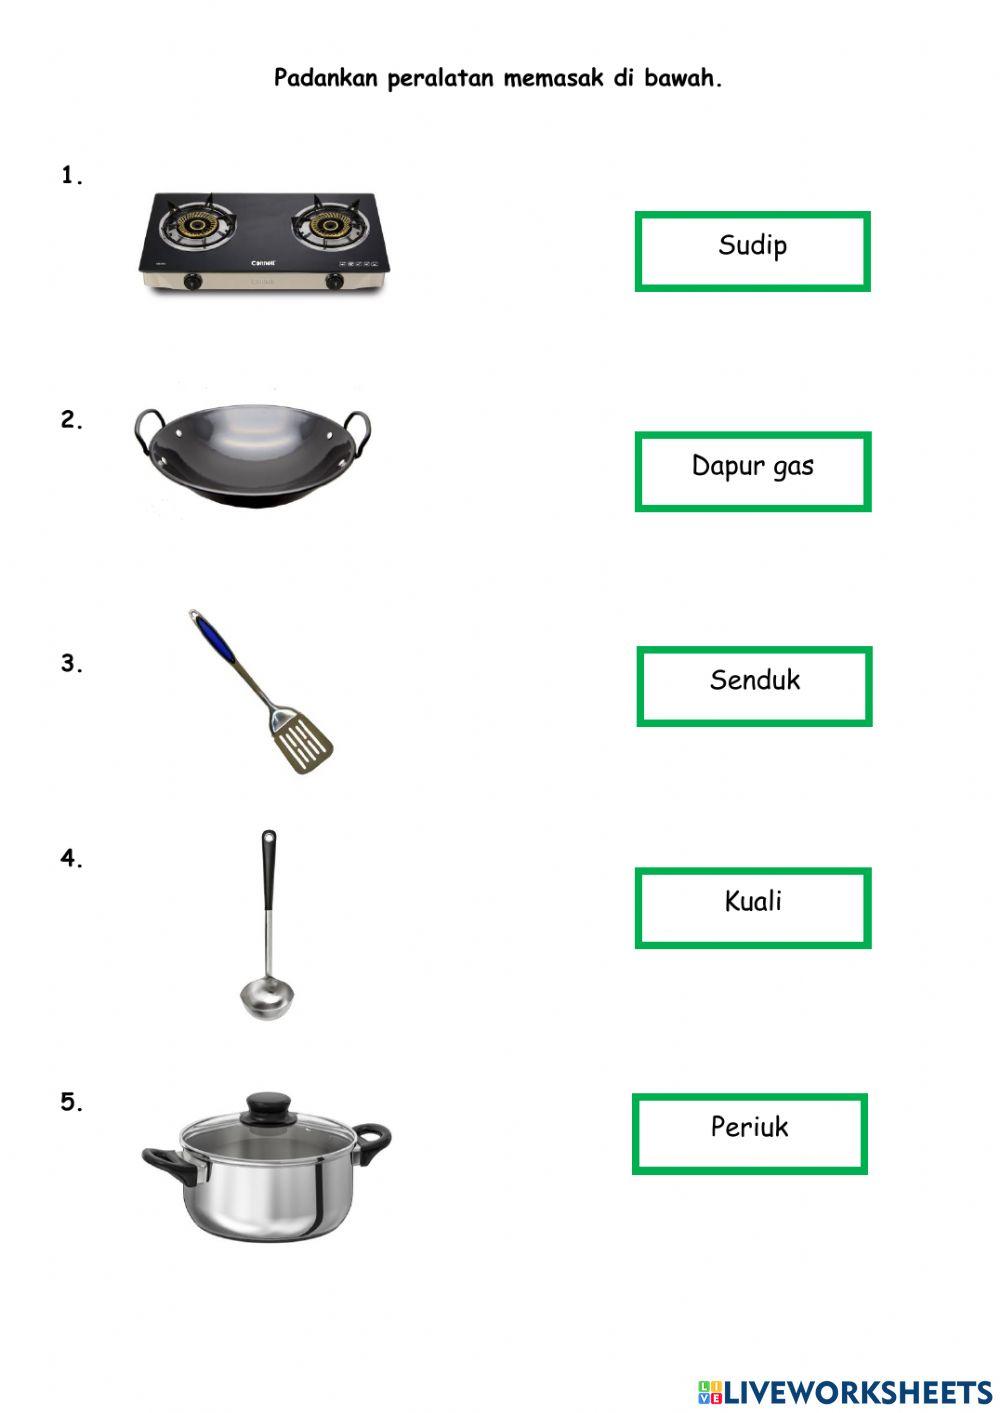 Peralatan memasak